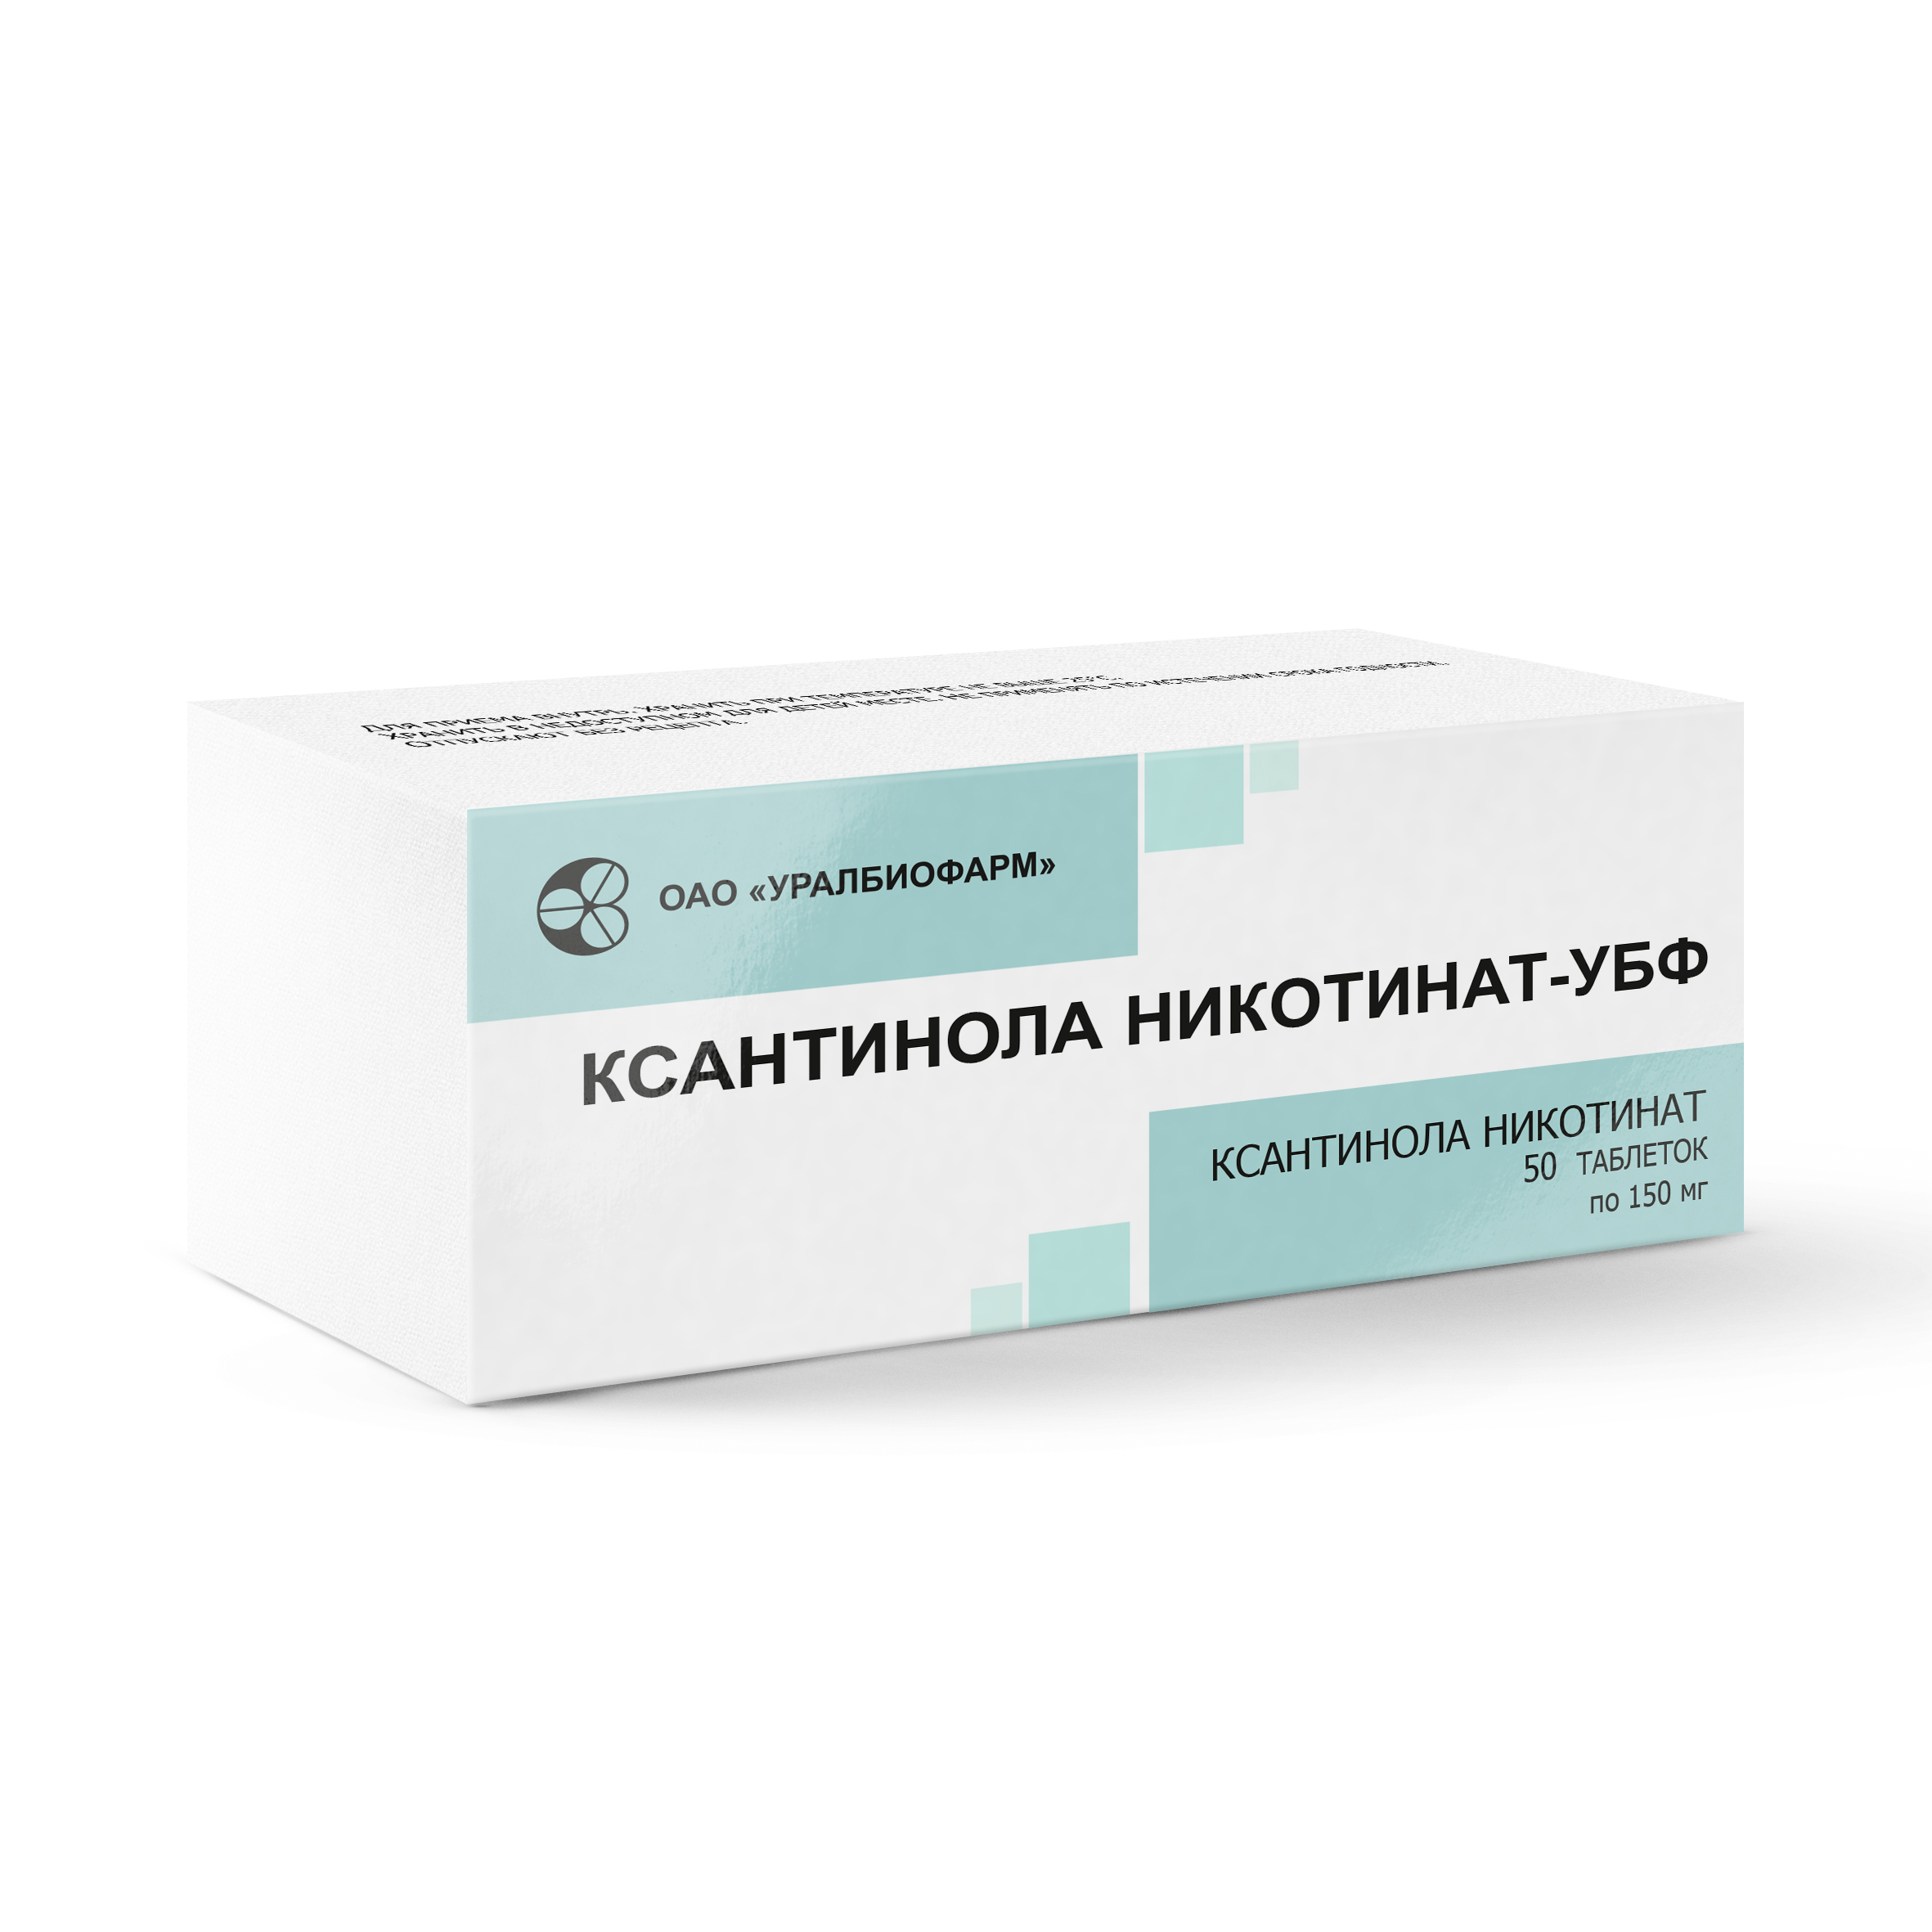 Ксантинола никотинат –УБФ | Уралбиофарм